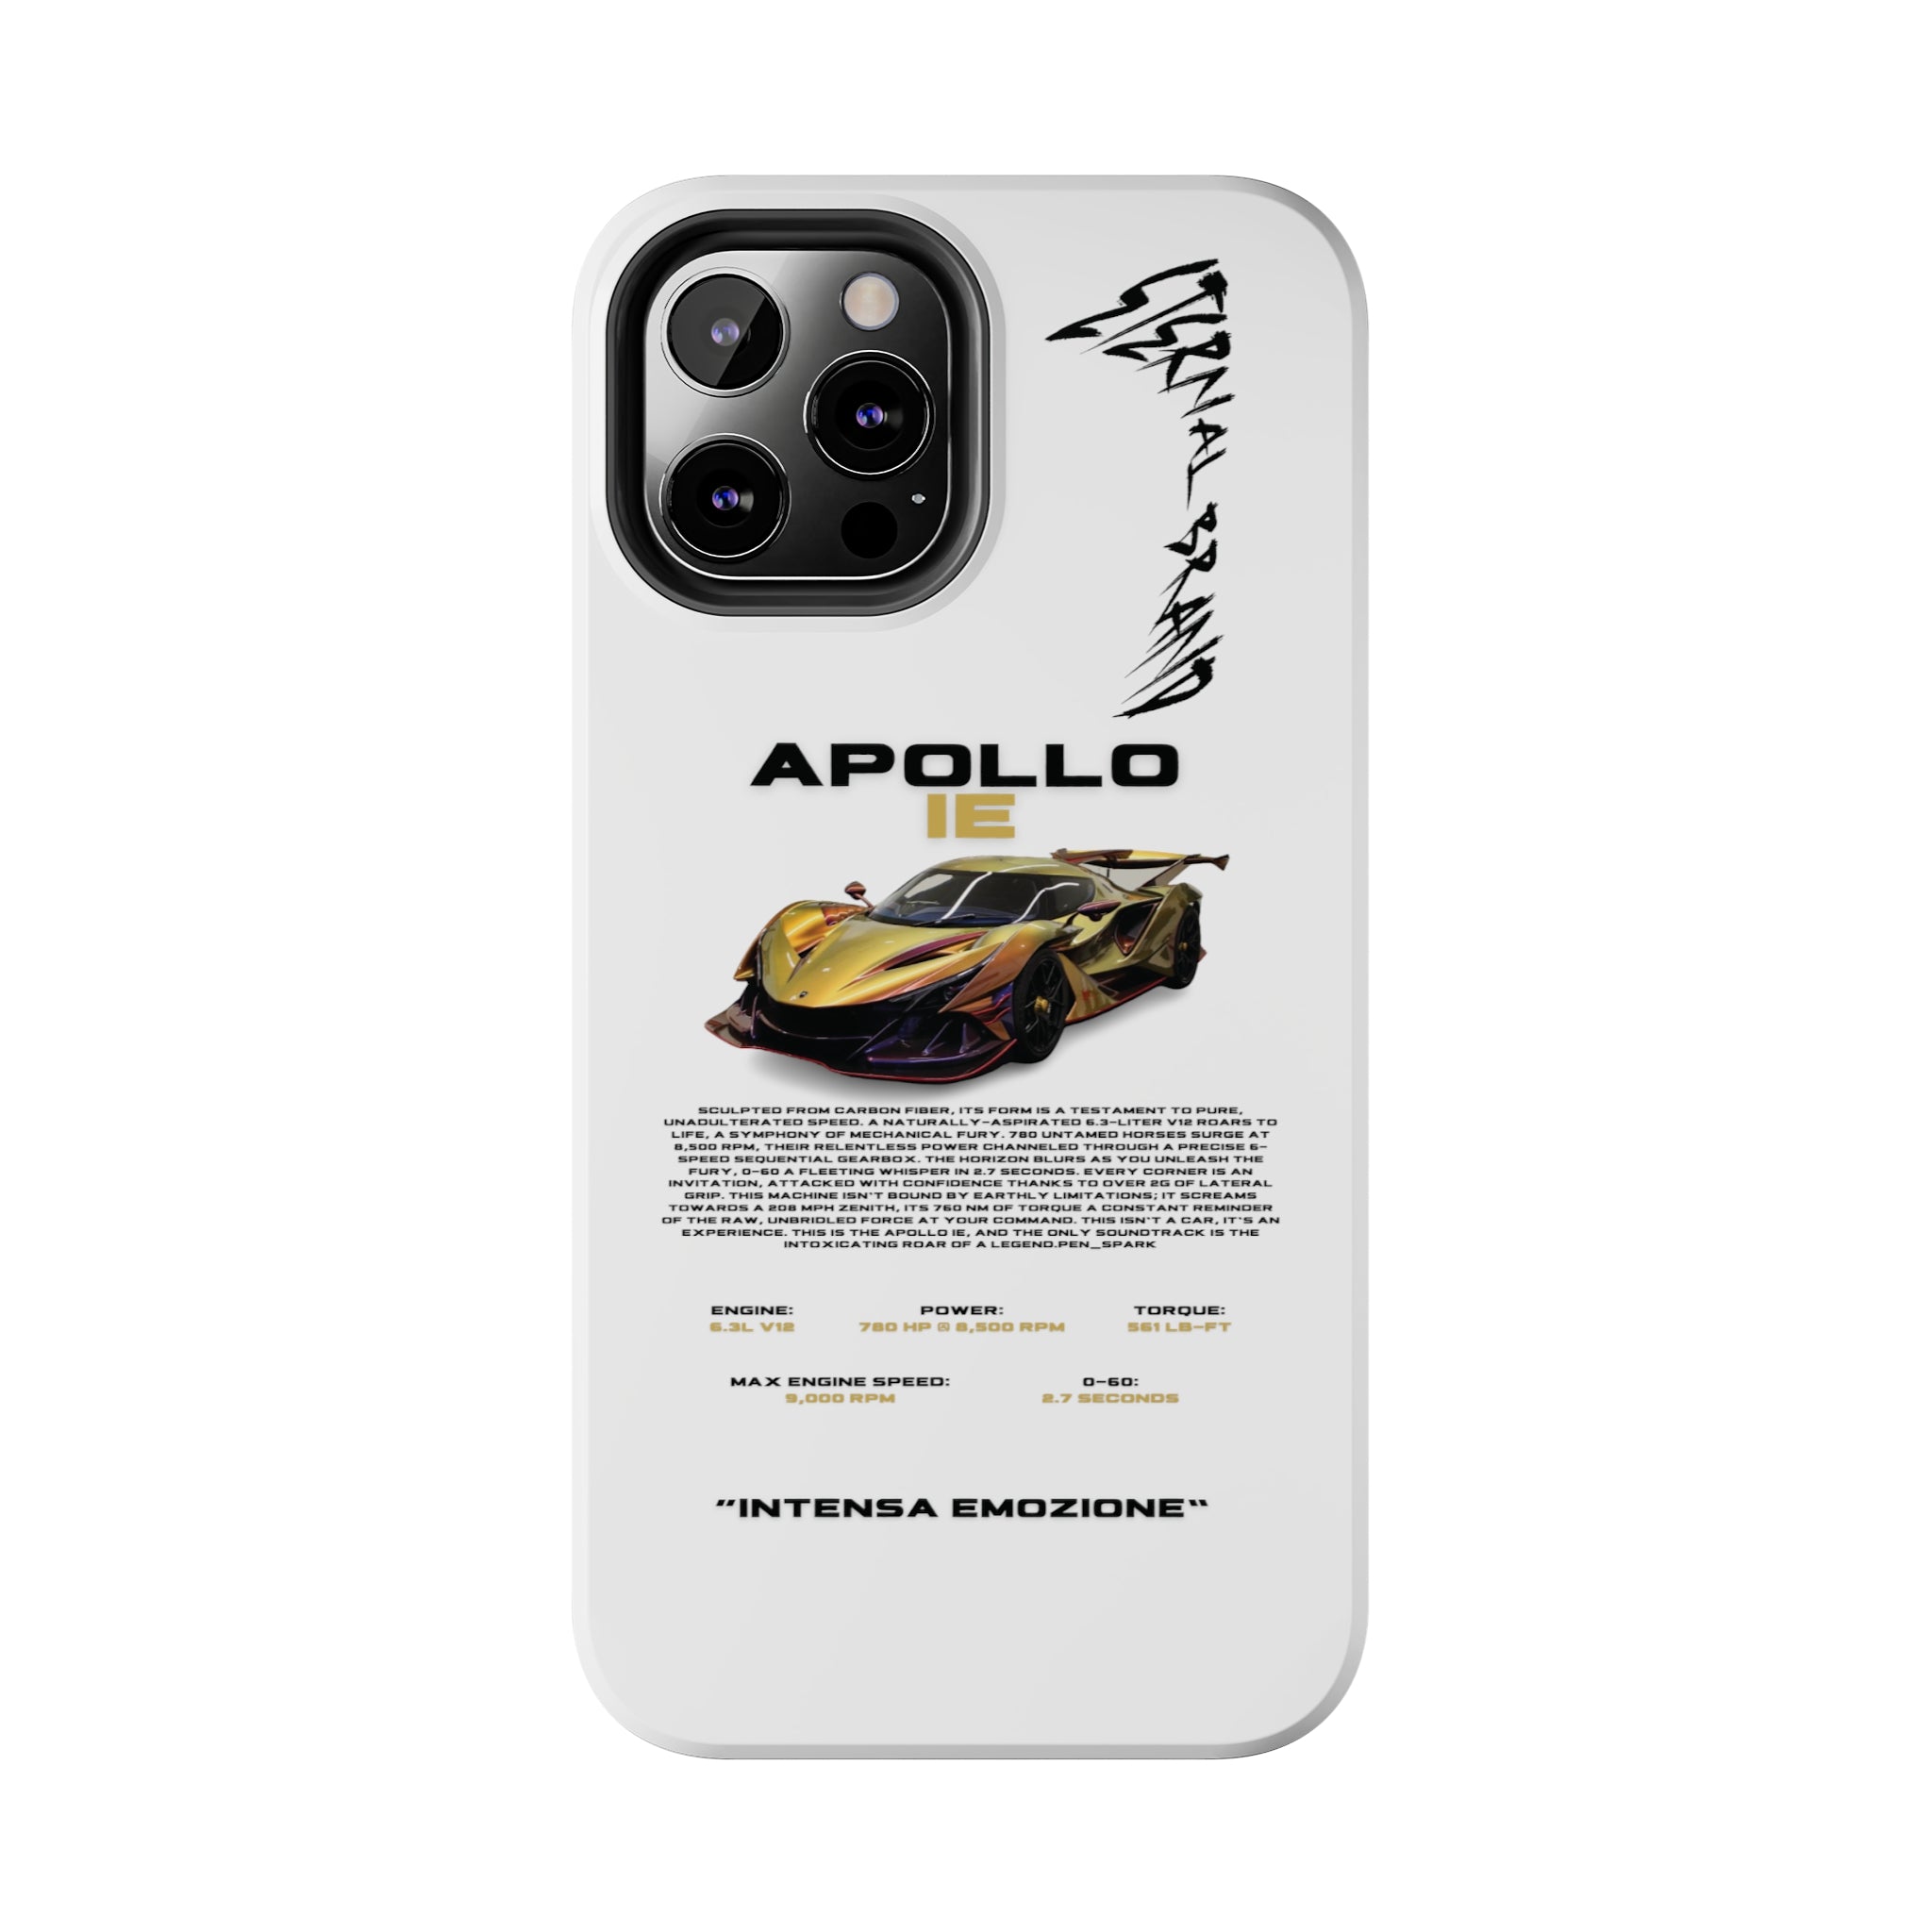 Apollo IE "Chameleon Carbon" "White"